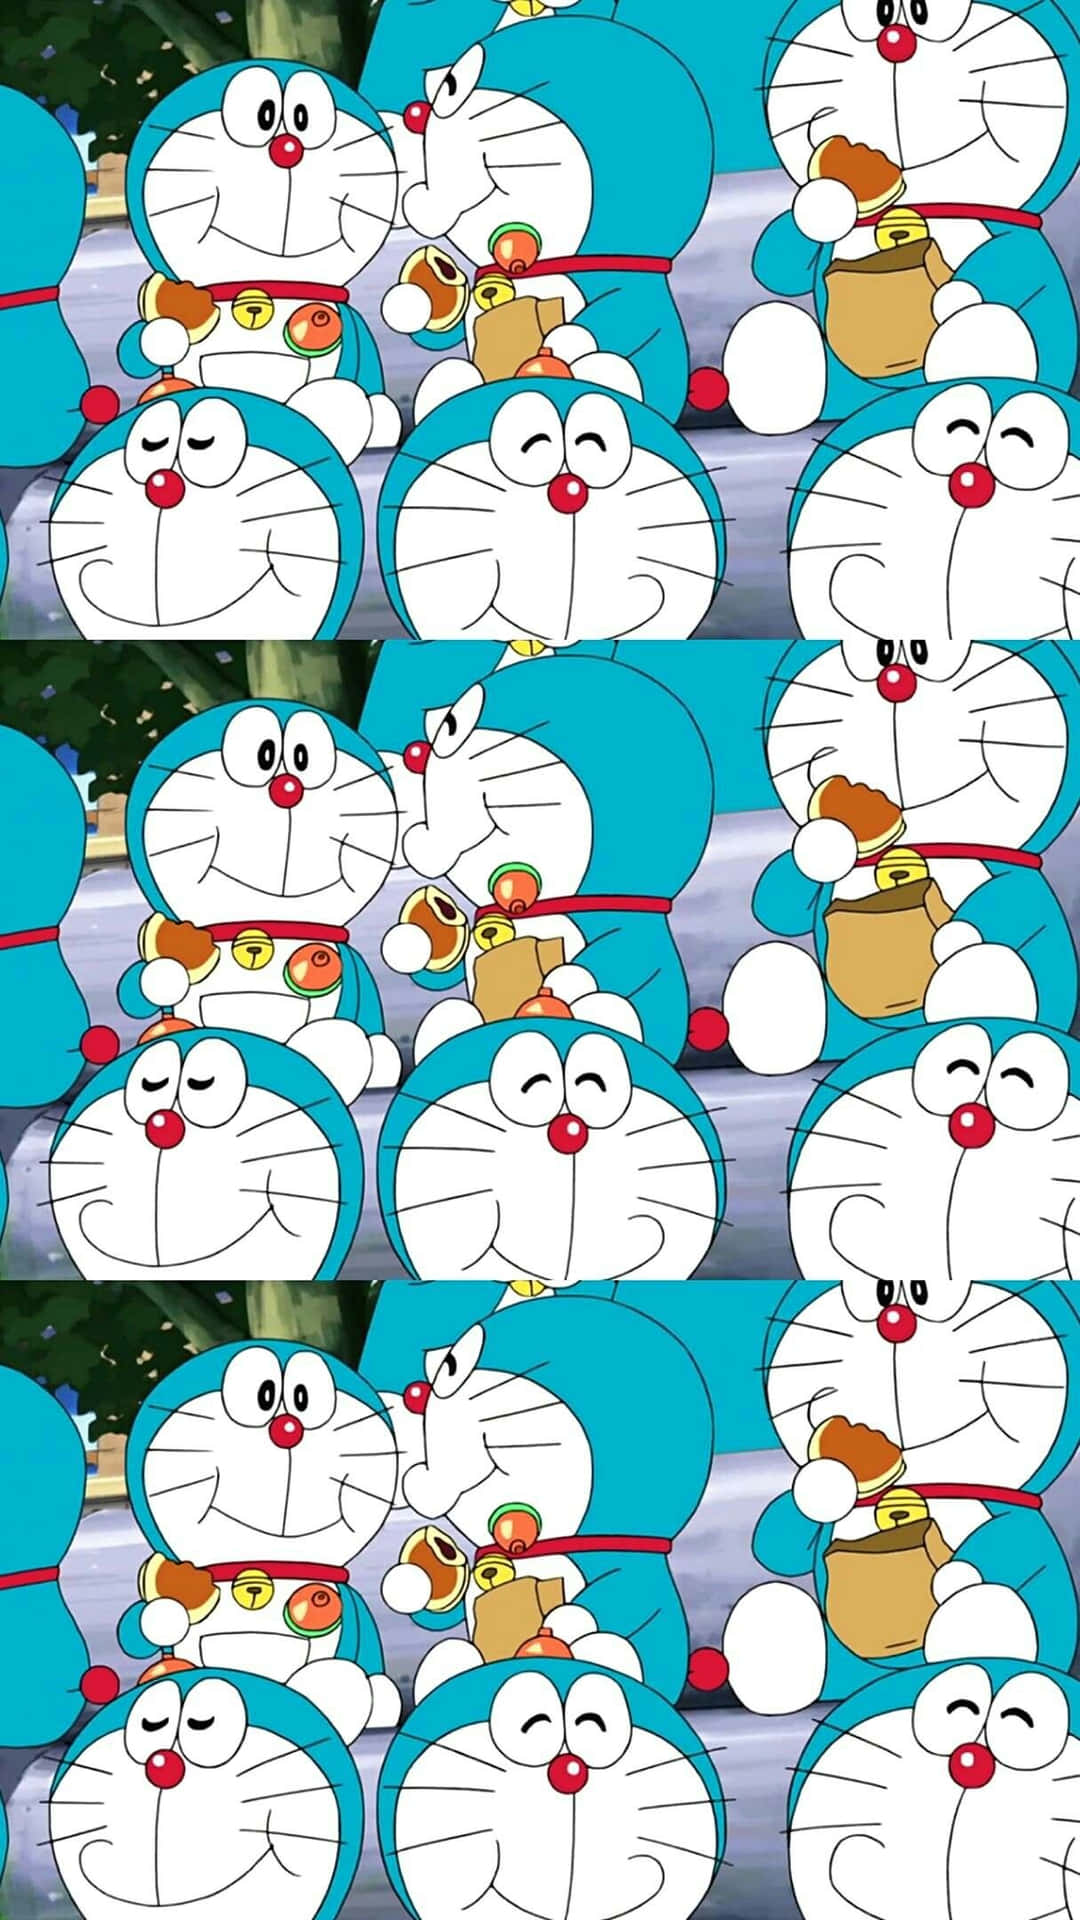 Doraemonbietet Dir Unterstützung An.